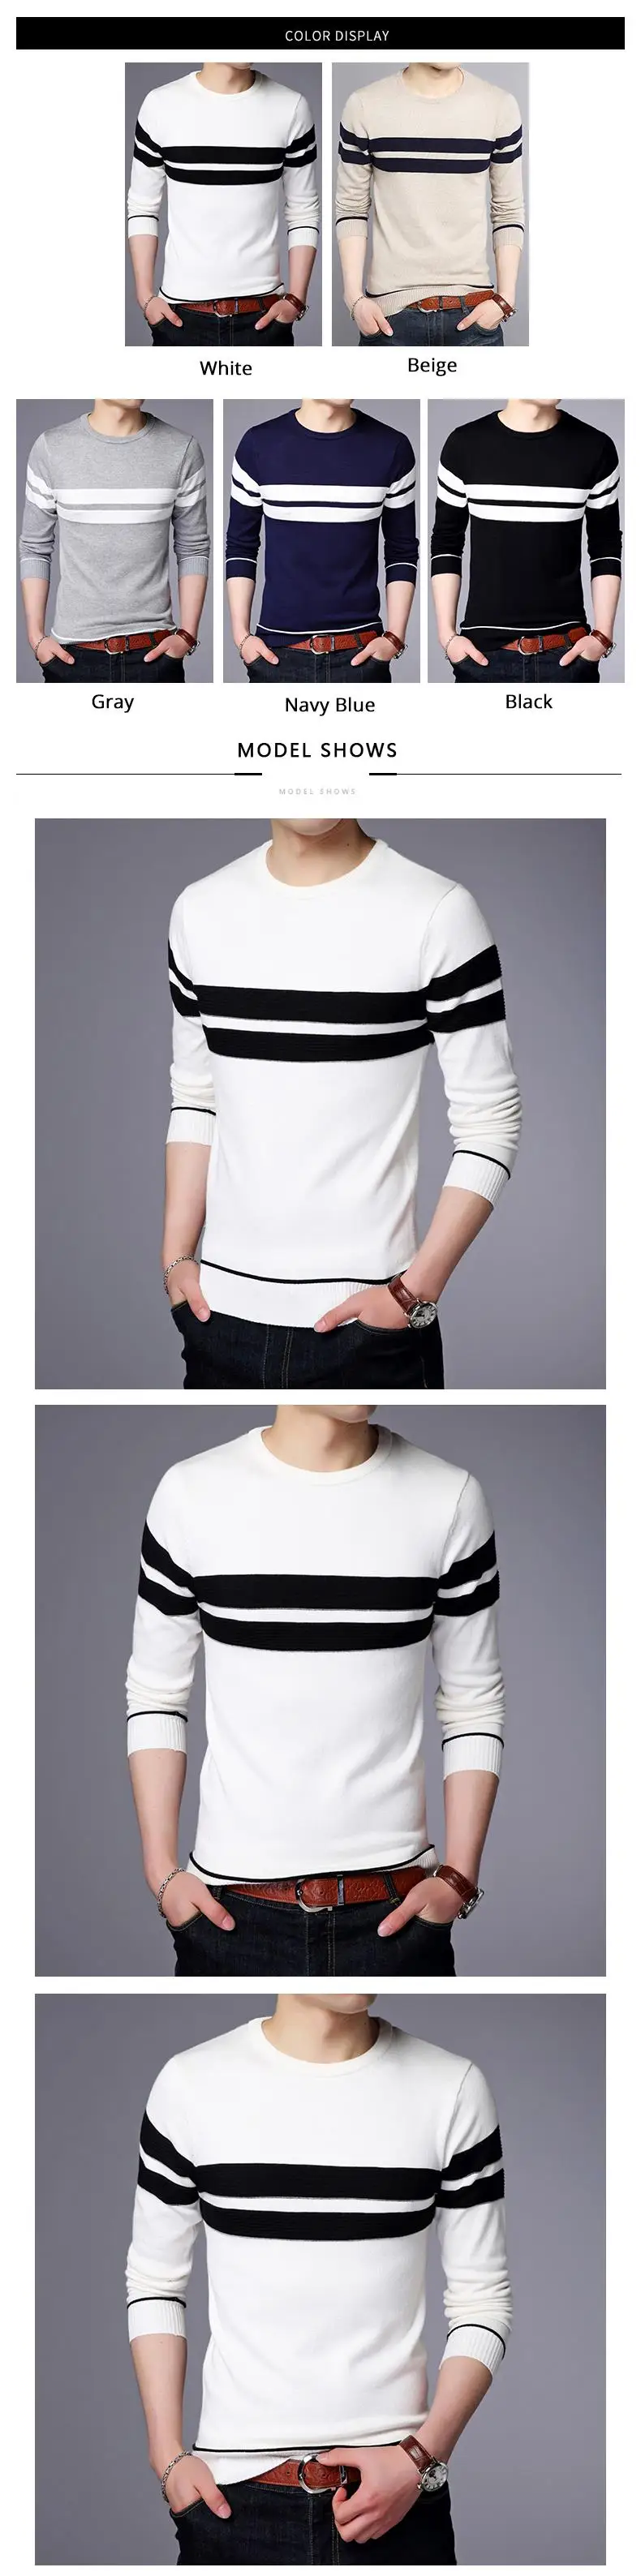 2019 новый модный бренд свитер для мужчин s пуловер Мужской пуловер Джемперы вязаный, шерстяной зимний Корейский стиль повседневная мужская